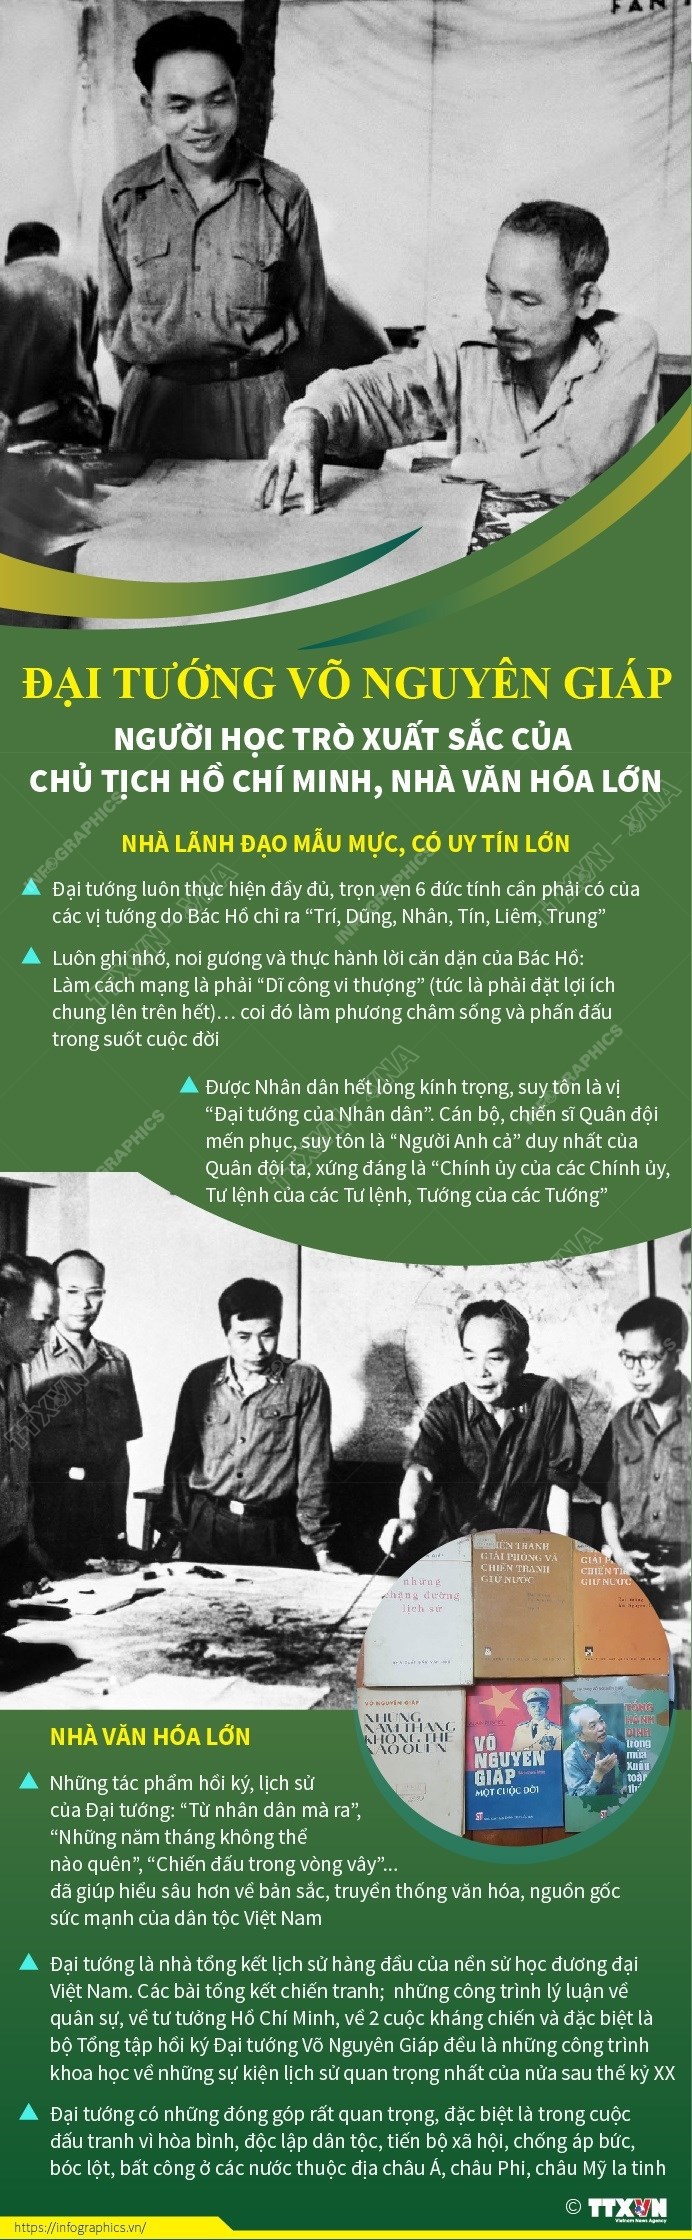 [Infographic] Đại tướng Võ Nguyên Giáp - Người học trò xuất sắc, gần gũi của Bác Hồ - Ảnh 1